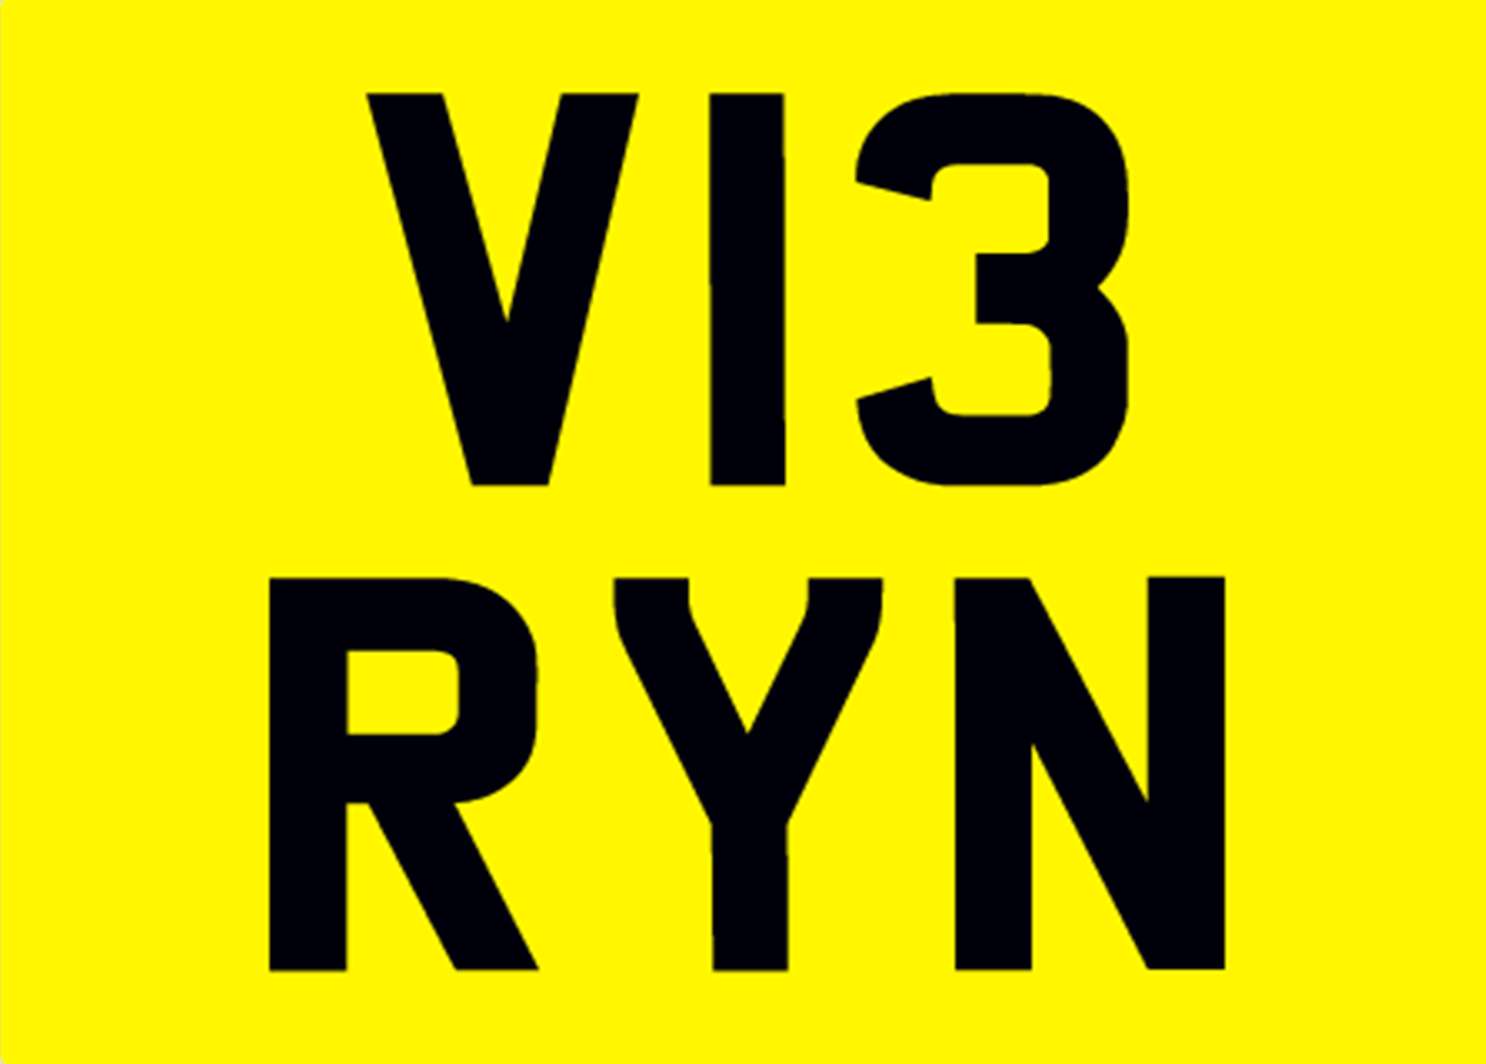 <p>&nbsp; V13 RYN Registration number</p>